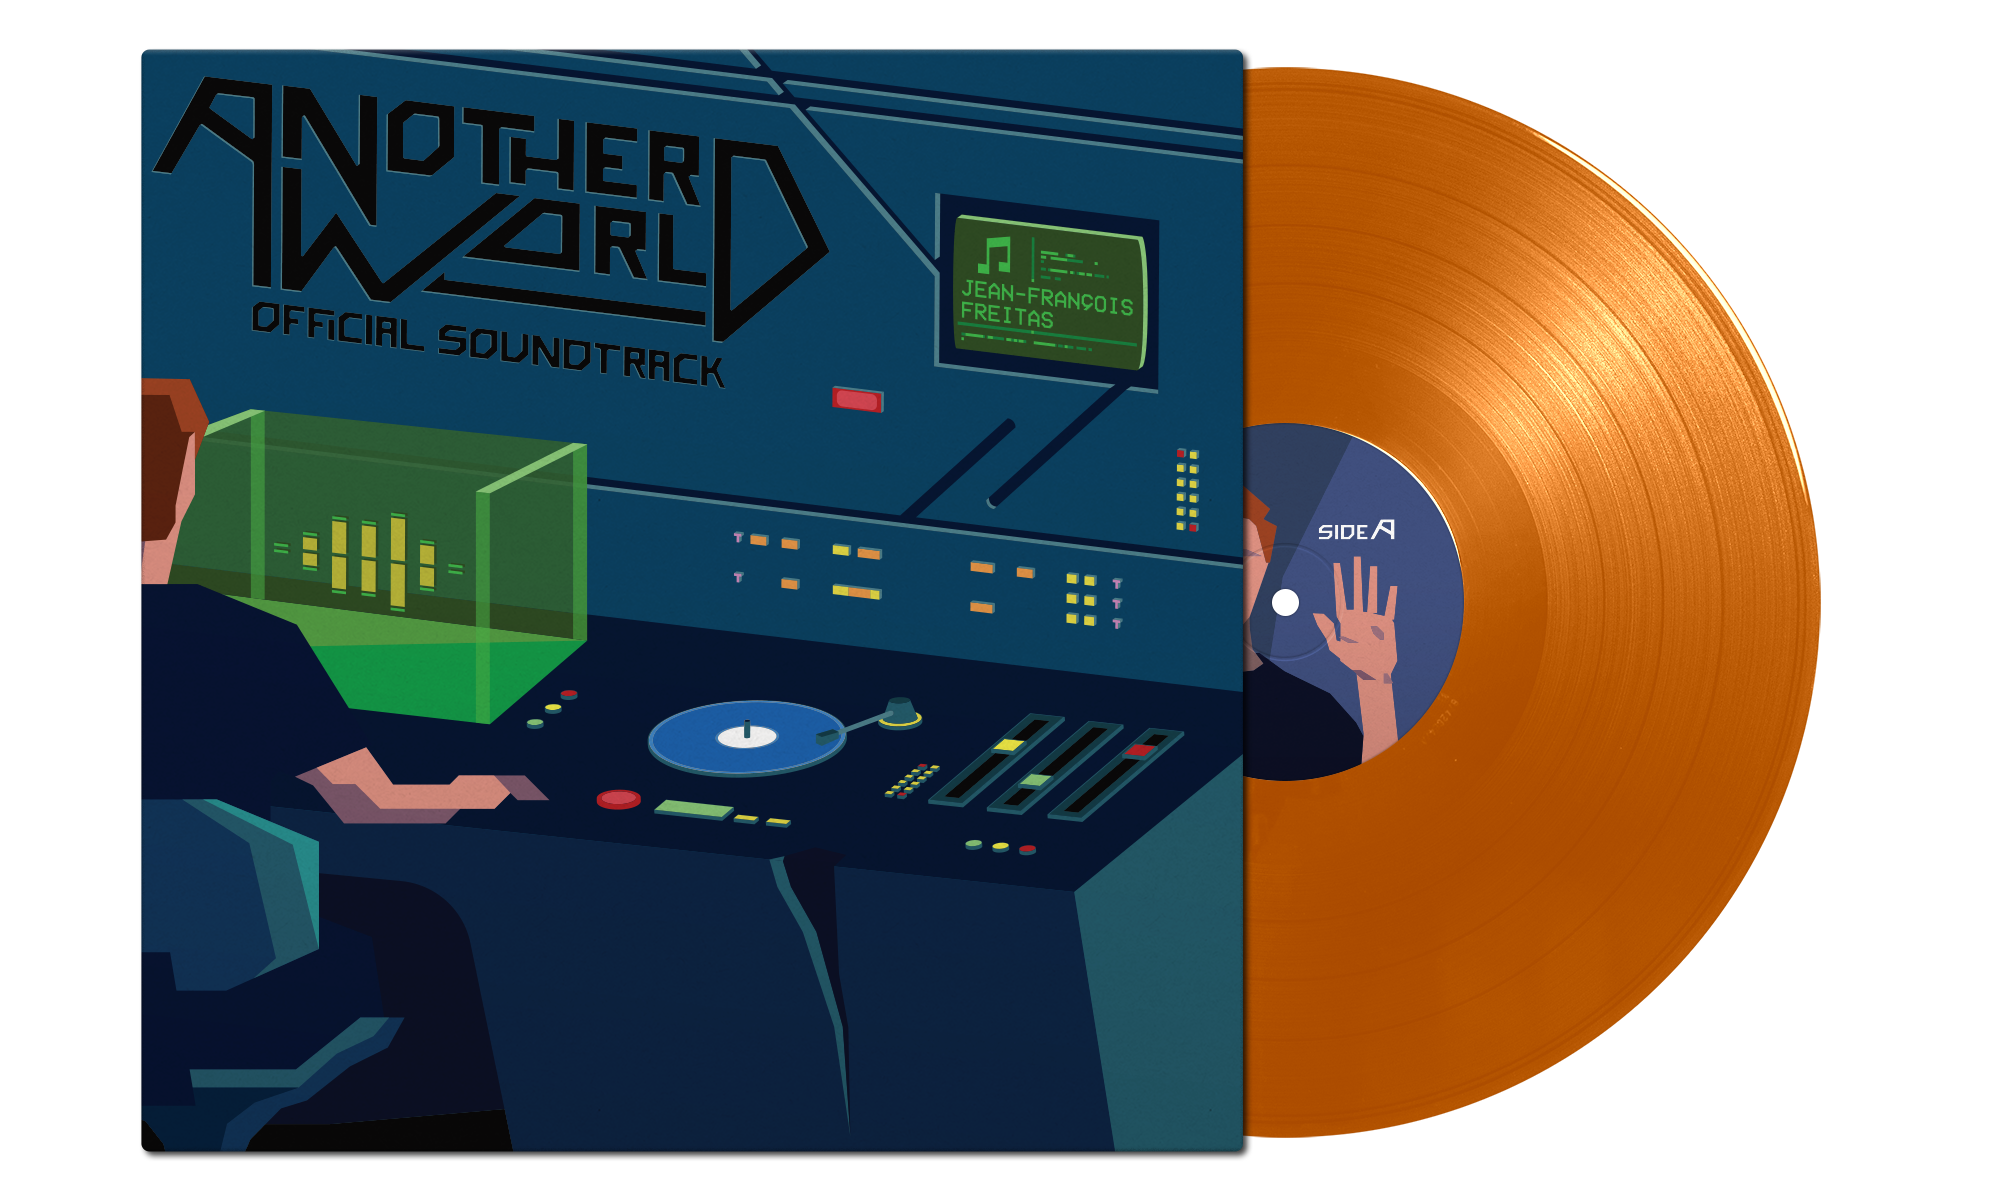 Another World on orange single vinyl